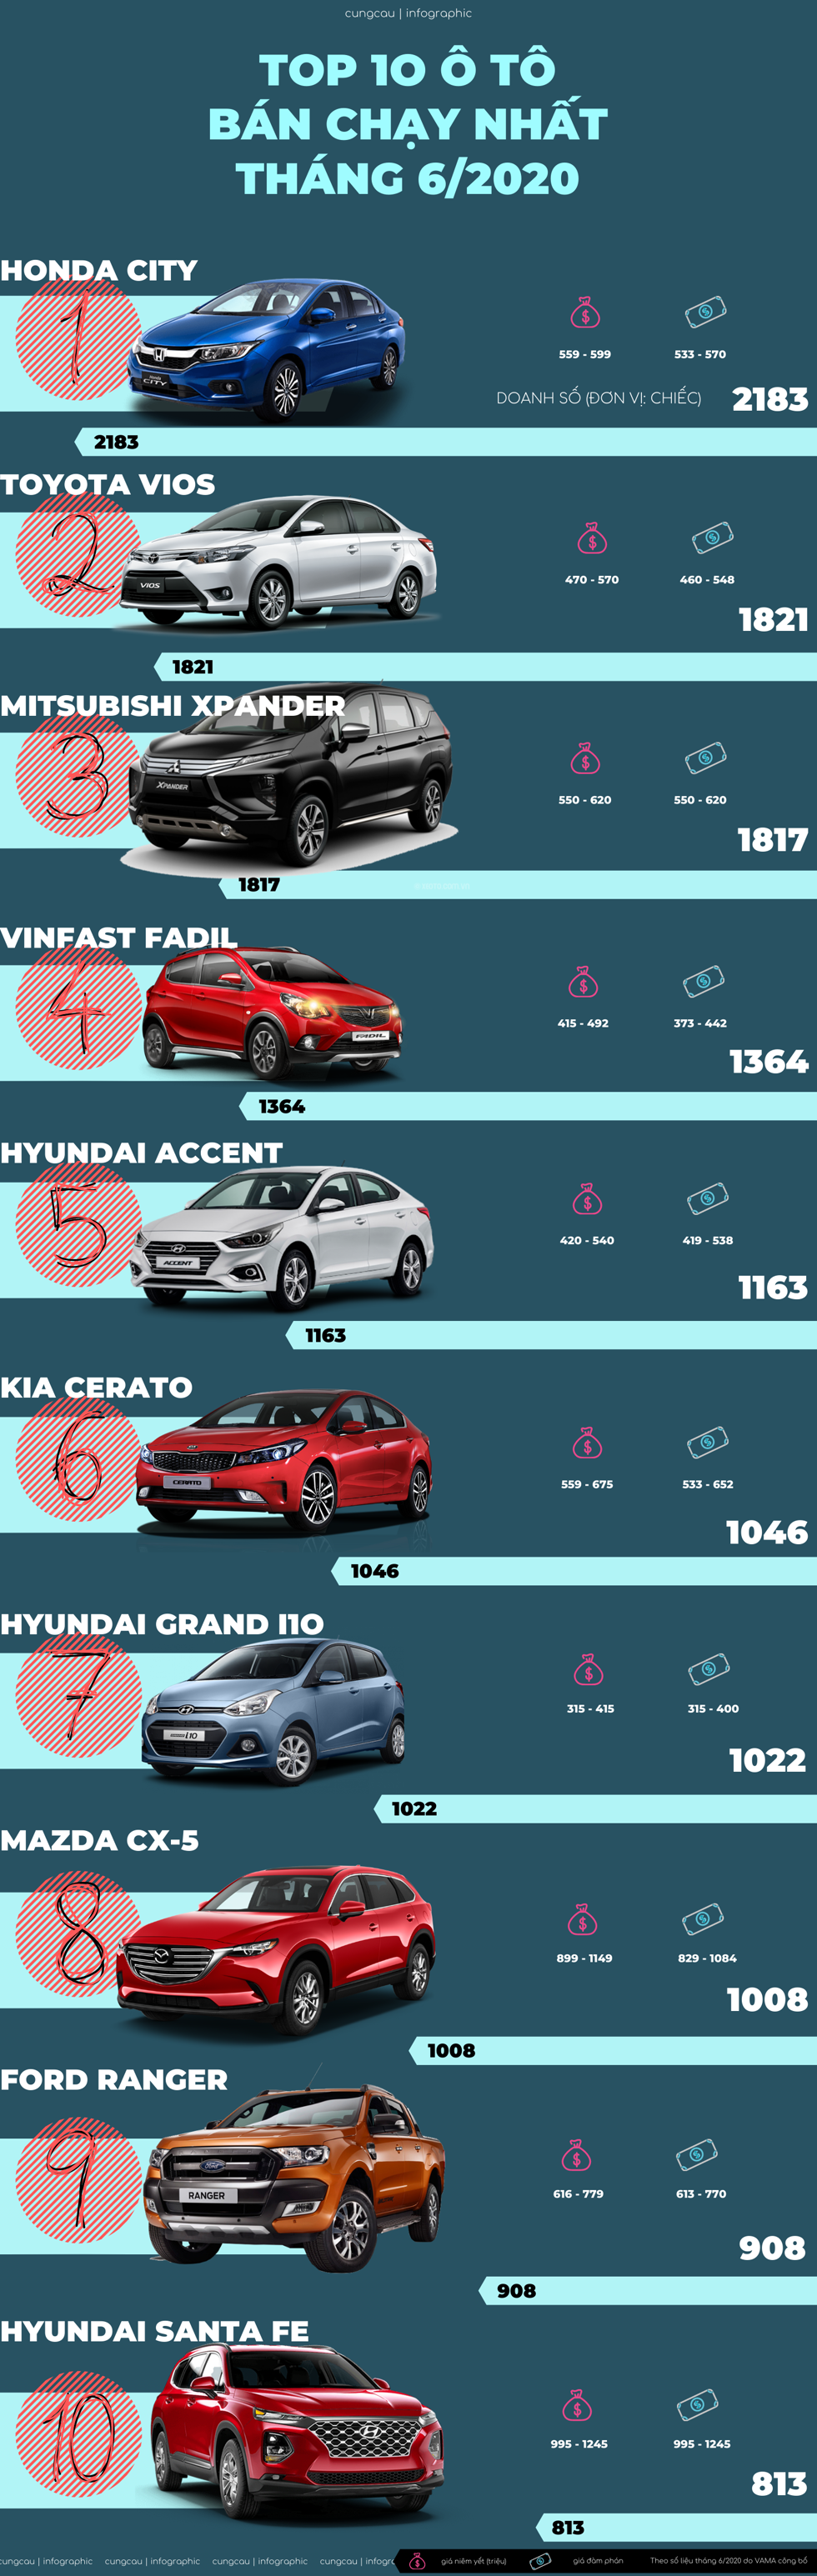 Top 10 ô tô bán chạy nhất tháng 6/2020: Vios mất 'ngôi vương', Fadil vẫn là hatchback ăn khách nhất